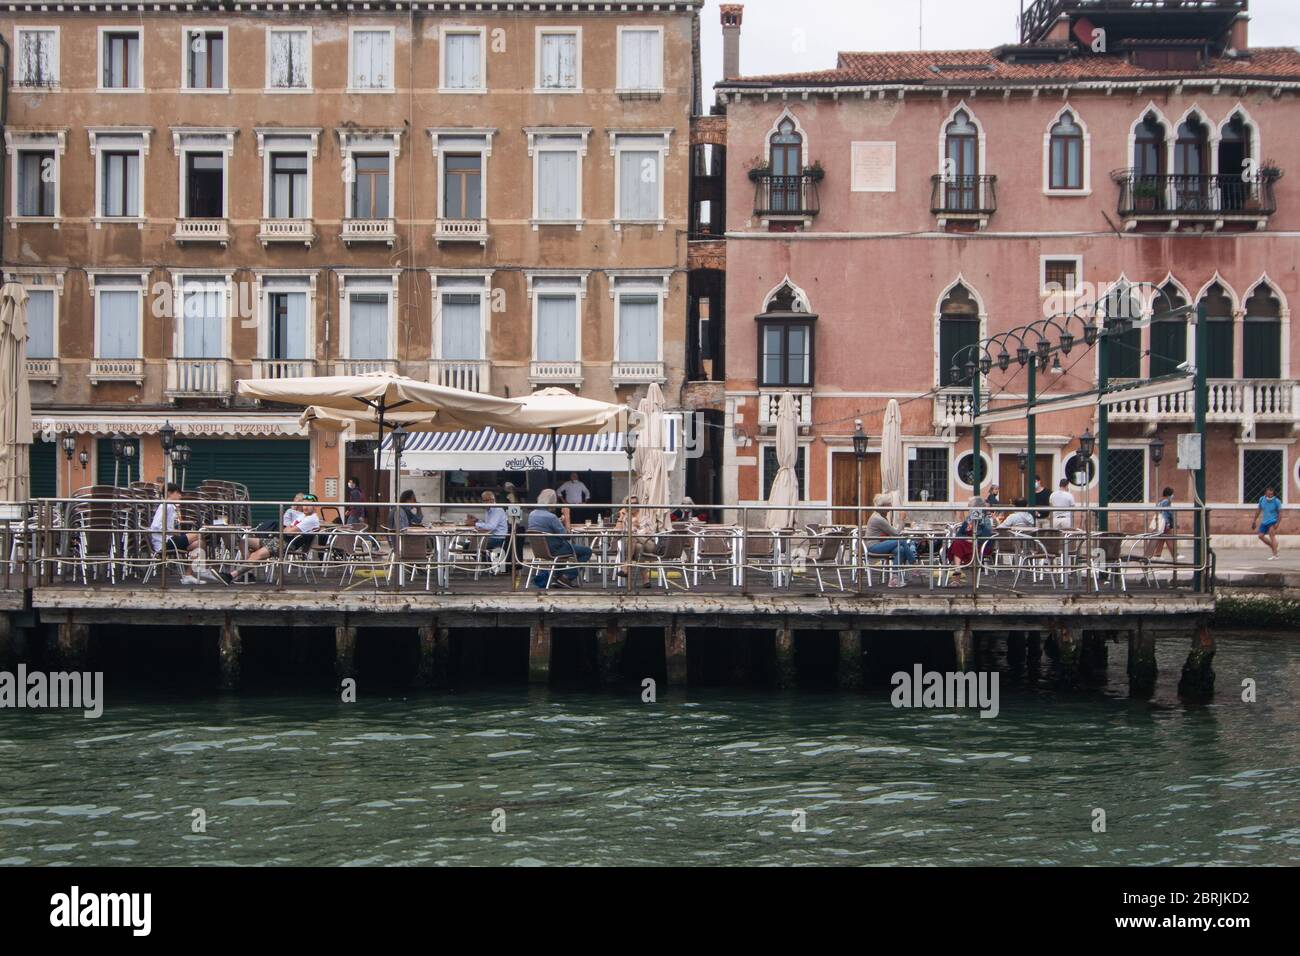 VENEZIA, ITALIA - MAGGIO: I cittadini godono di un open bar con posti a sedere lungo il canale della Giudecca il 18 maggio 2020 a Venezia, Italia. Ristoranti, bar, caffè, ha Foto Stock